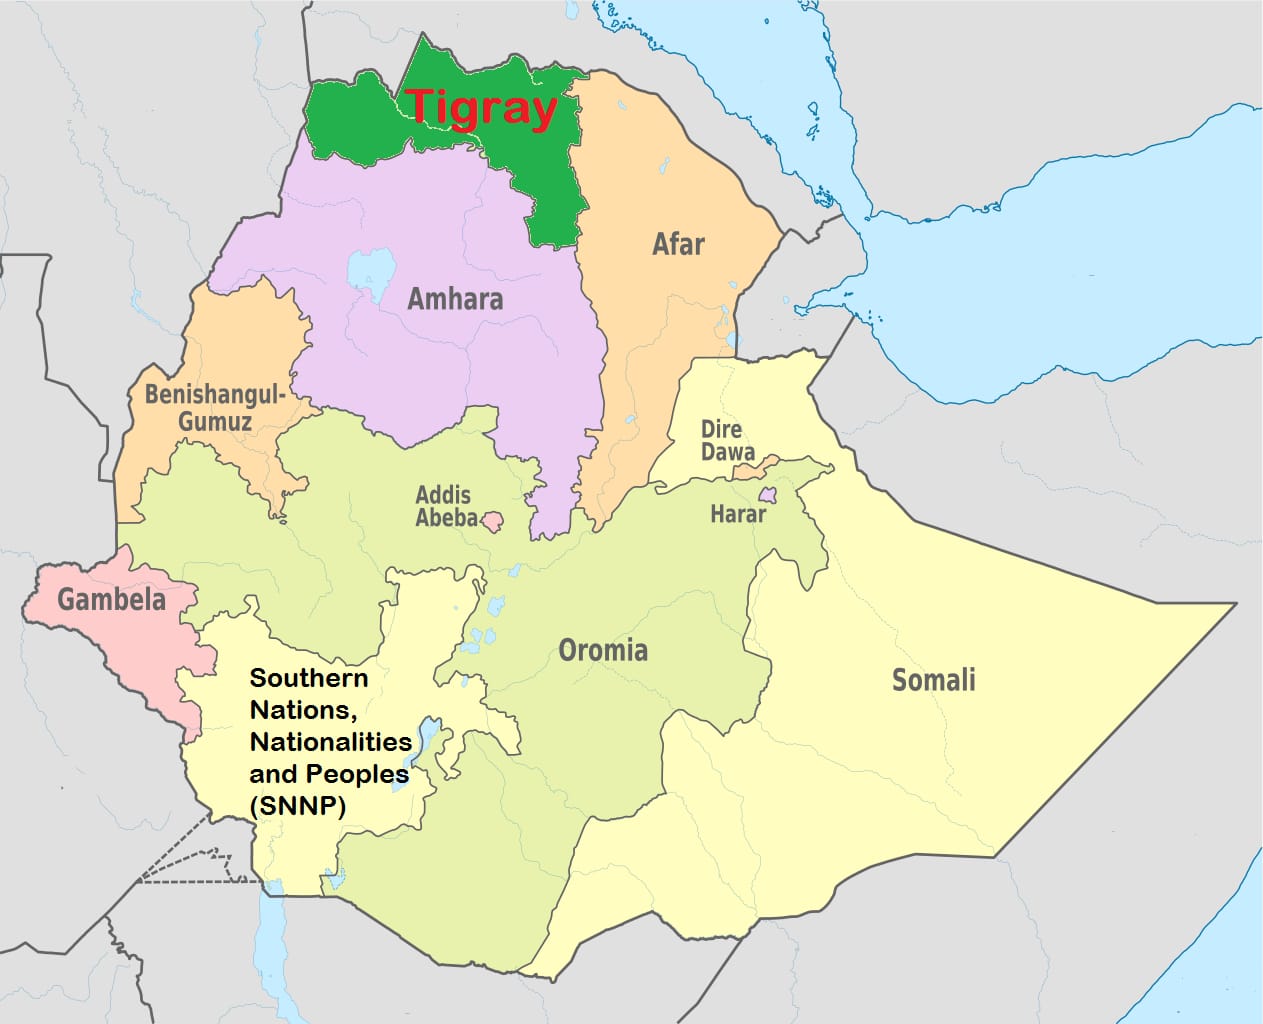 1 إثيوبيا .. الآلاف يتظاهرون في تيجراي للمطالبة بعودة النازحين وخروج القوات الأجنبية